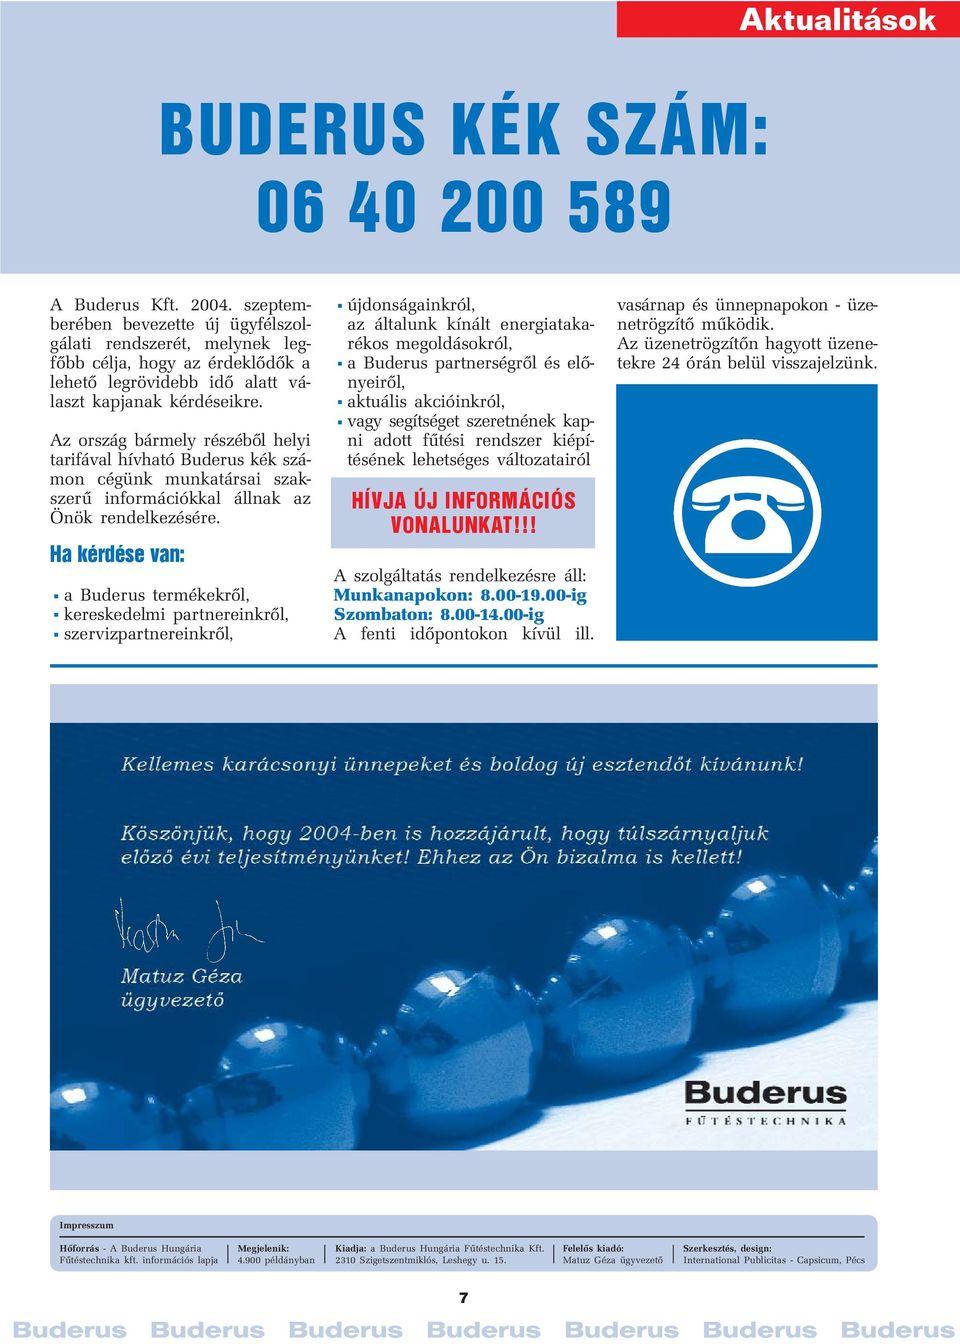 Az ország bármely részéből helyi tarifával hívható Buderus kék számon cégünk munkatársai szakszerű információkkal állnak az Önök rendelkezésére.